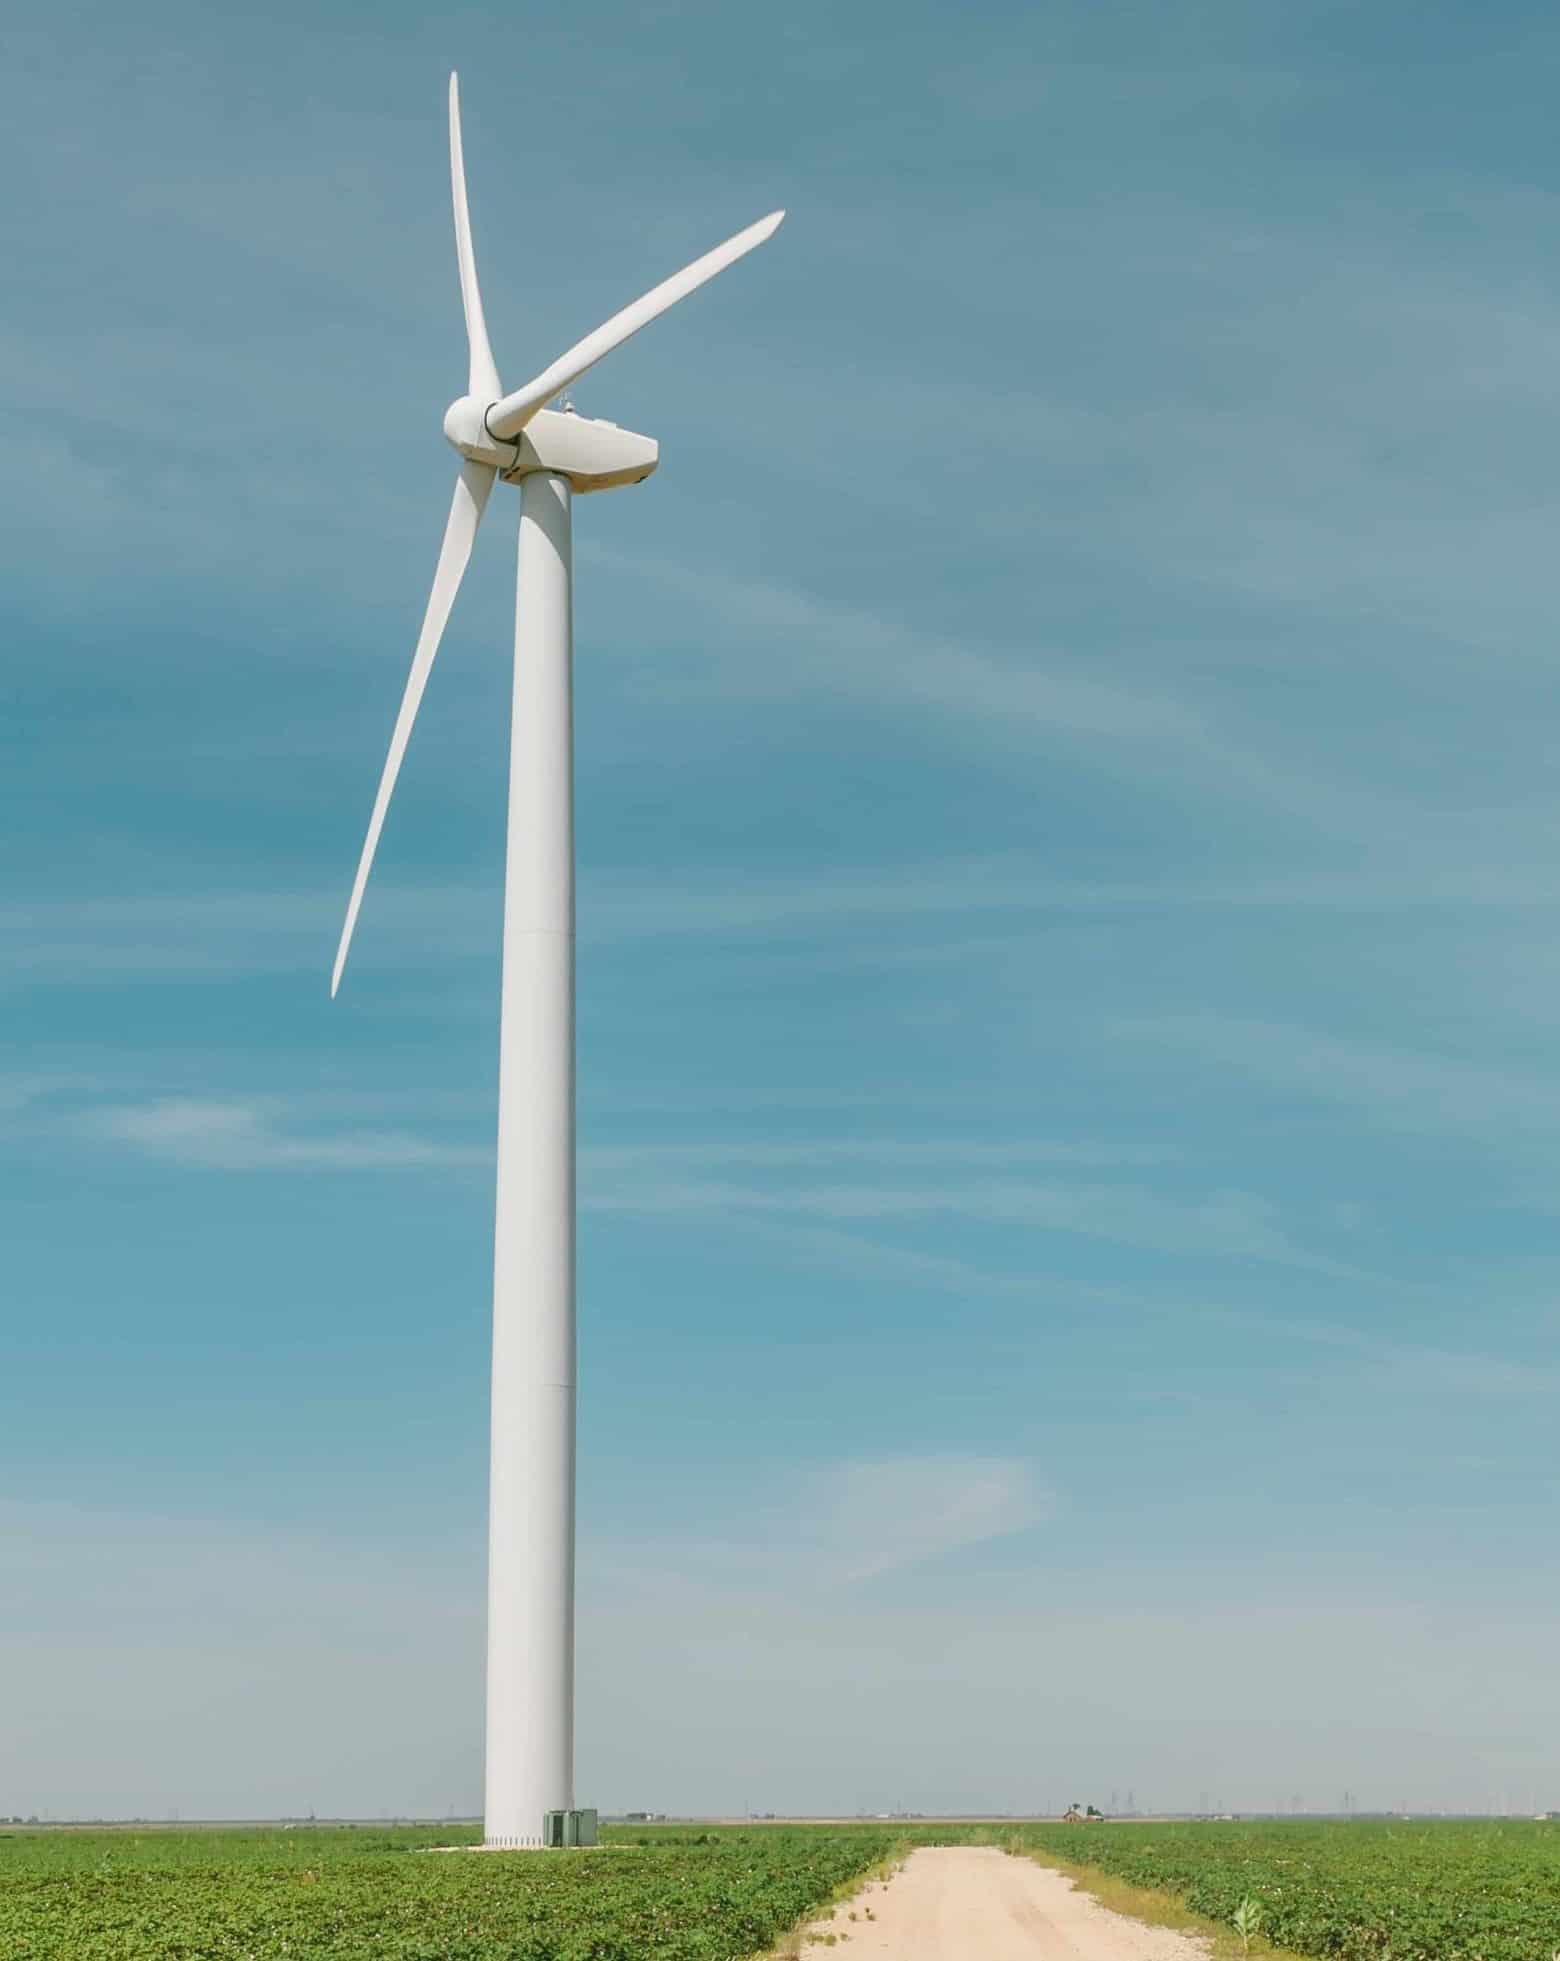 Image of wind turbine in field